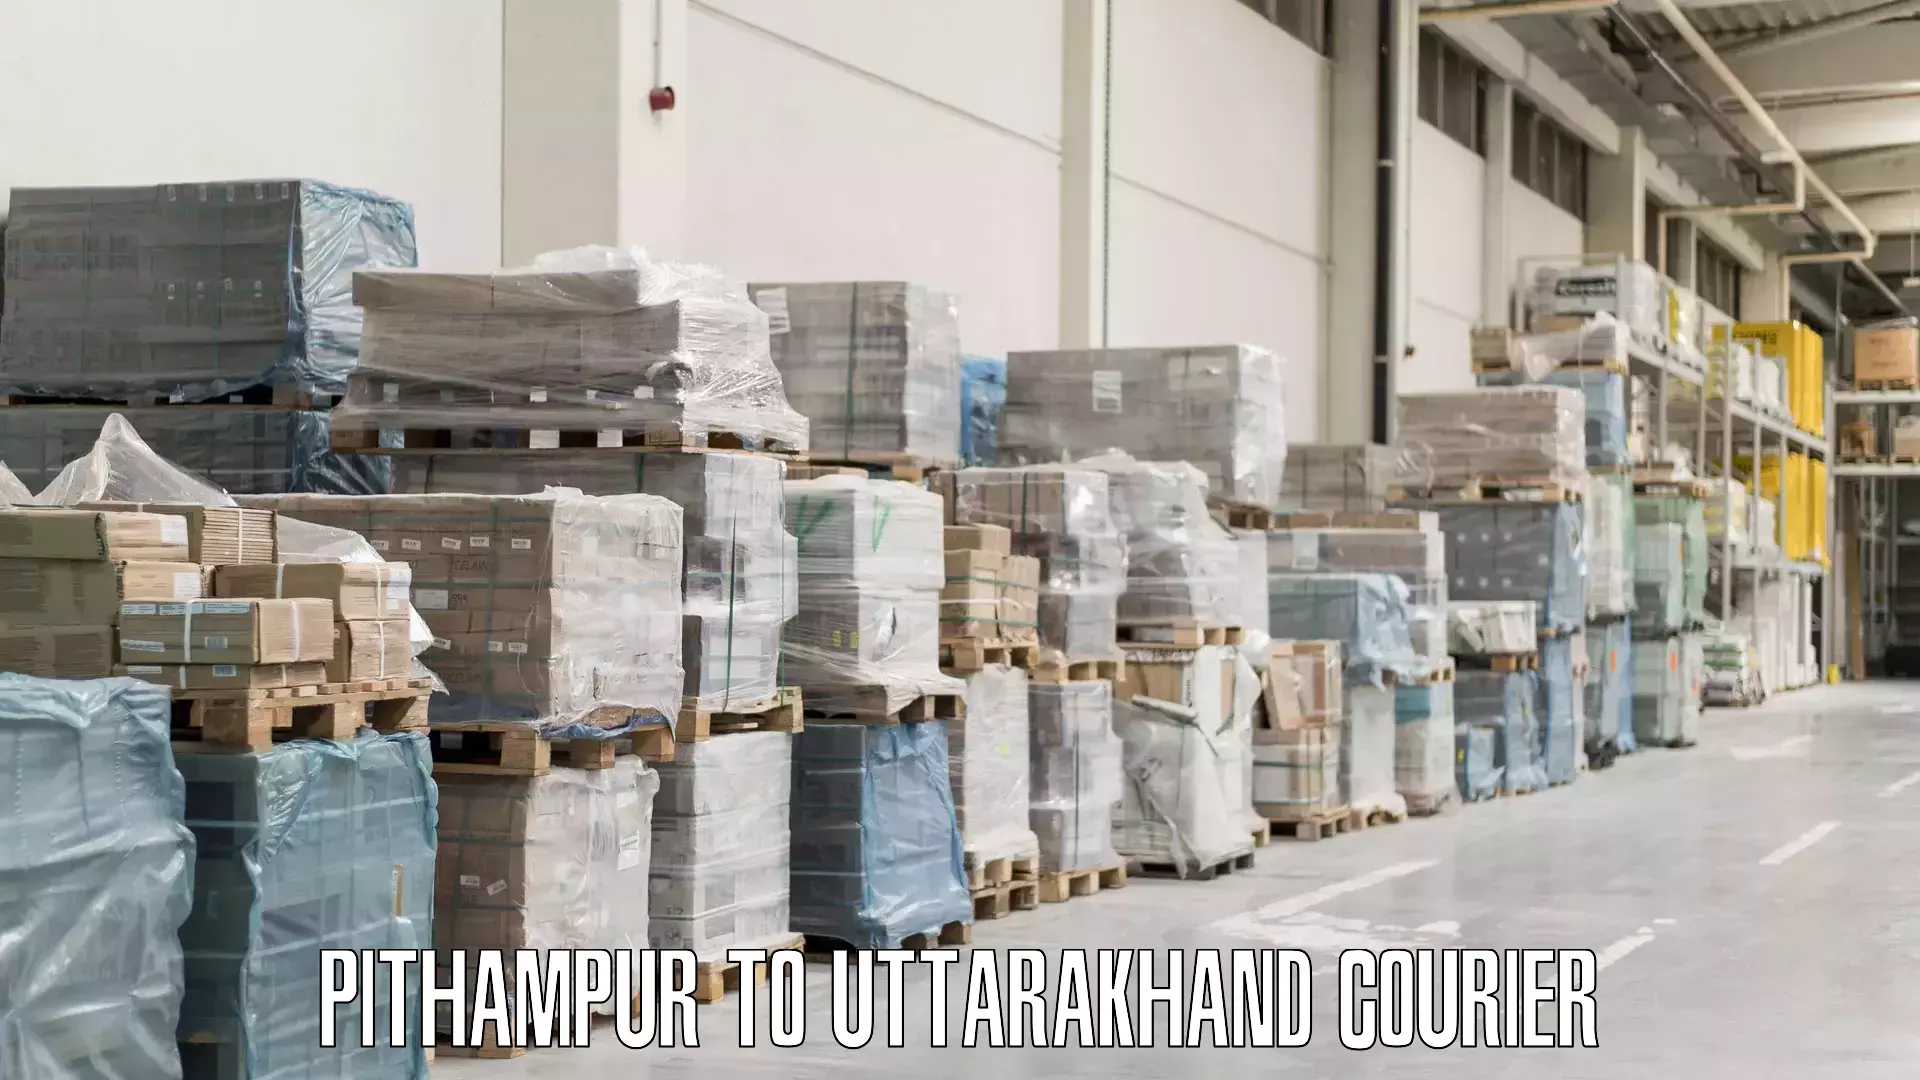 Emergency baggage service Pithampur to Uttarakhand